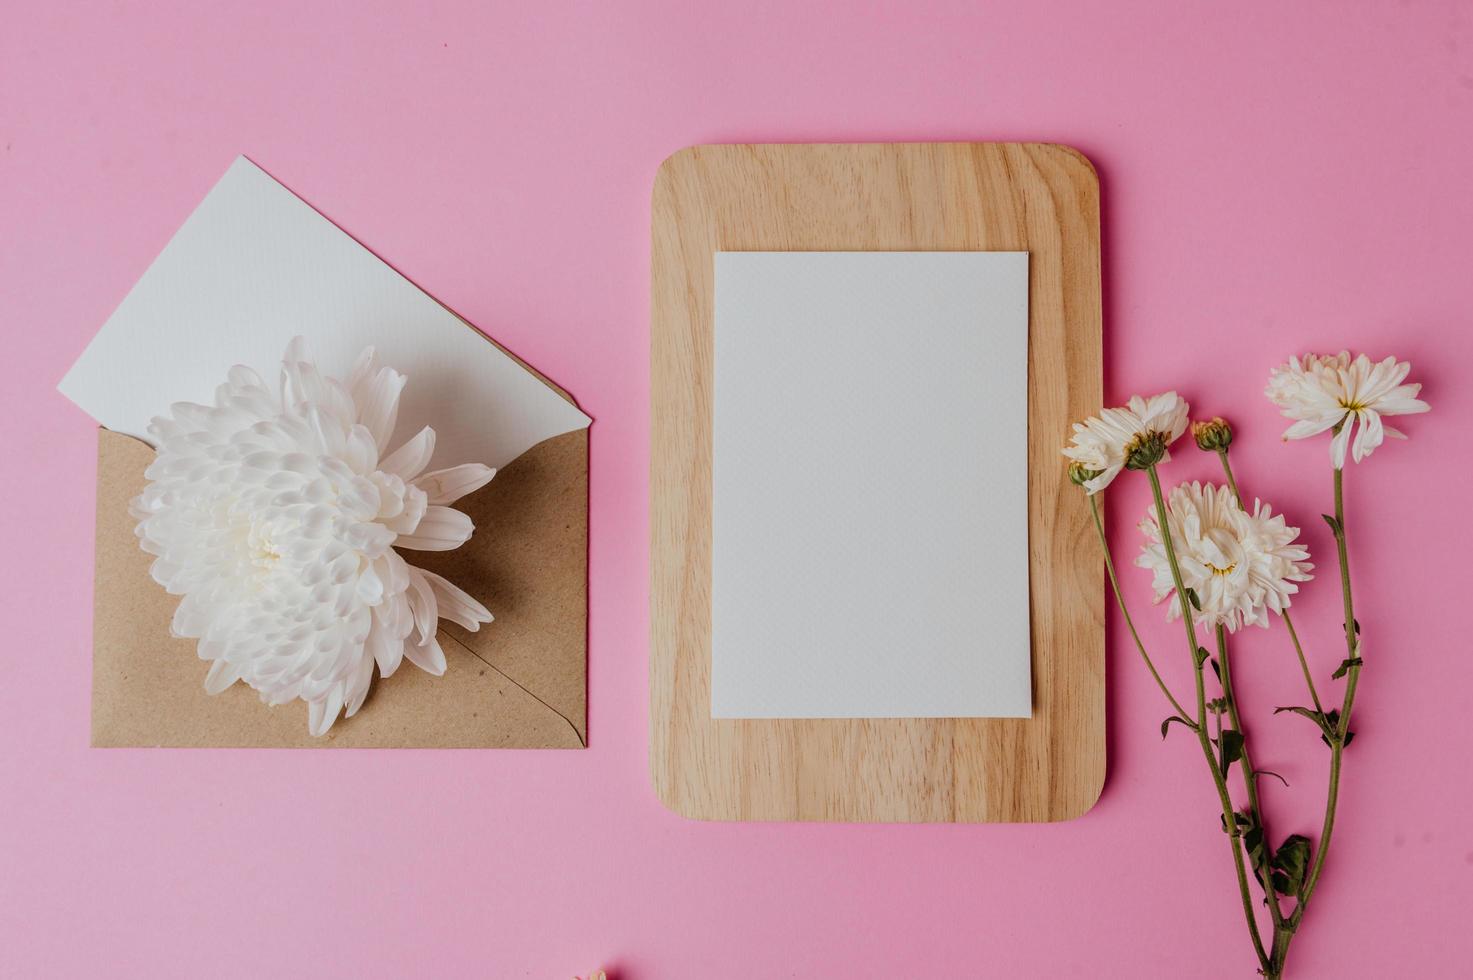 brunt kuvert, blomma och tomt kort på träplatta med rosa foto